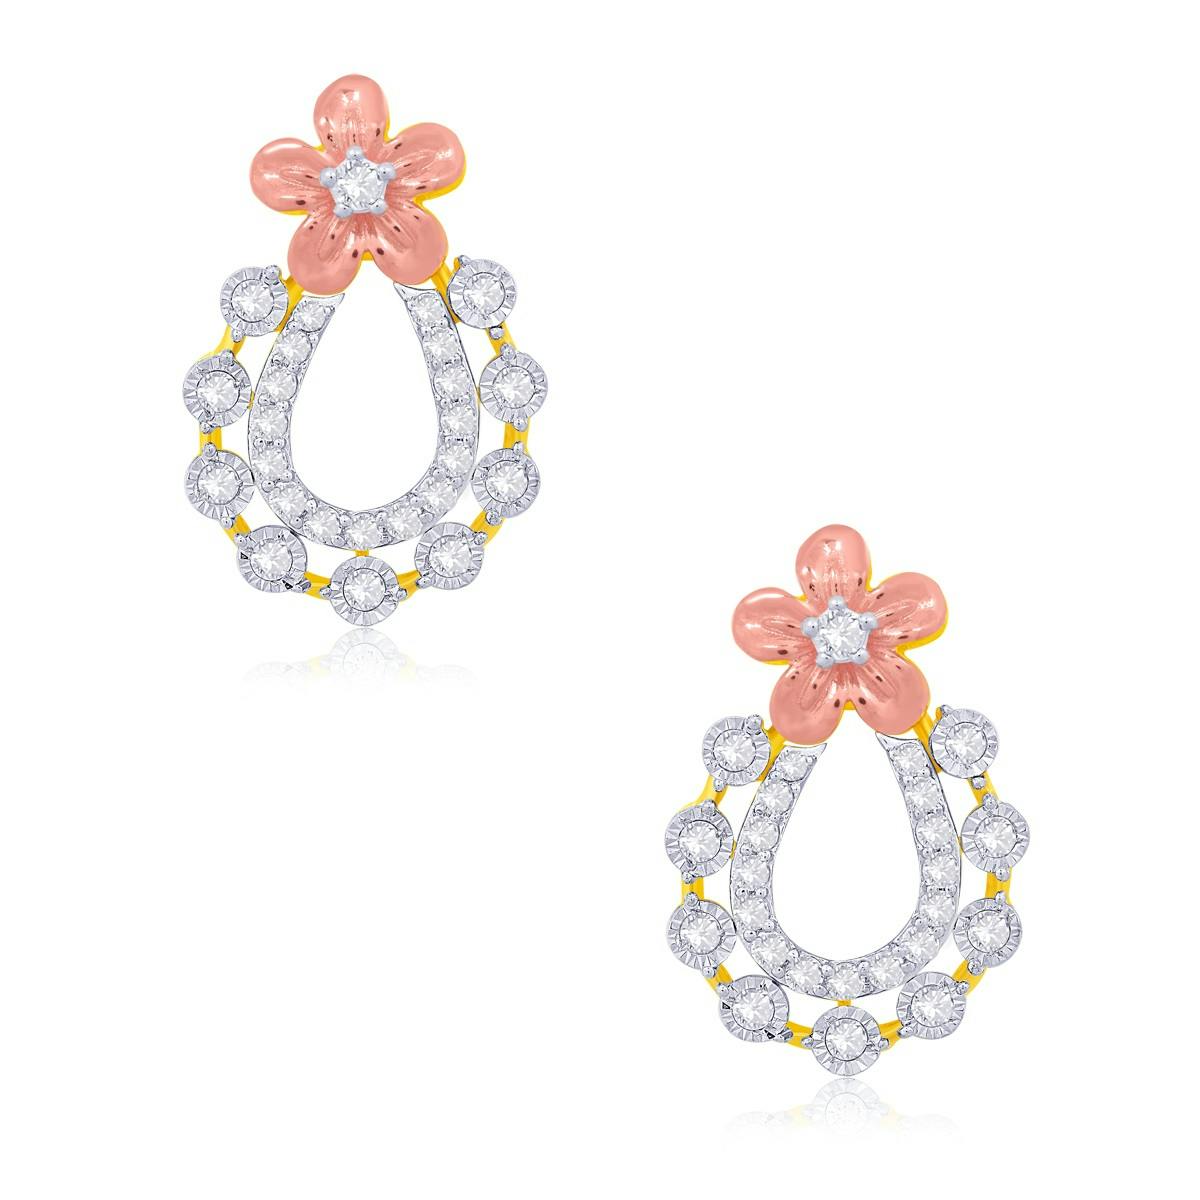 Archyy diamond earrings